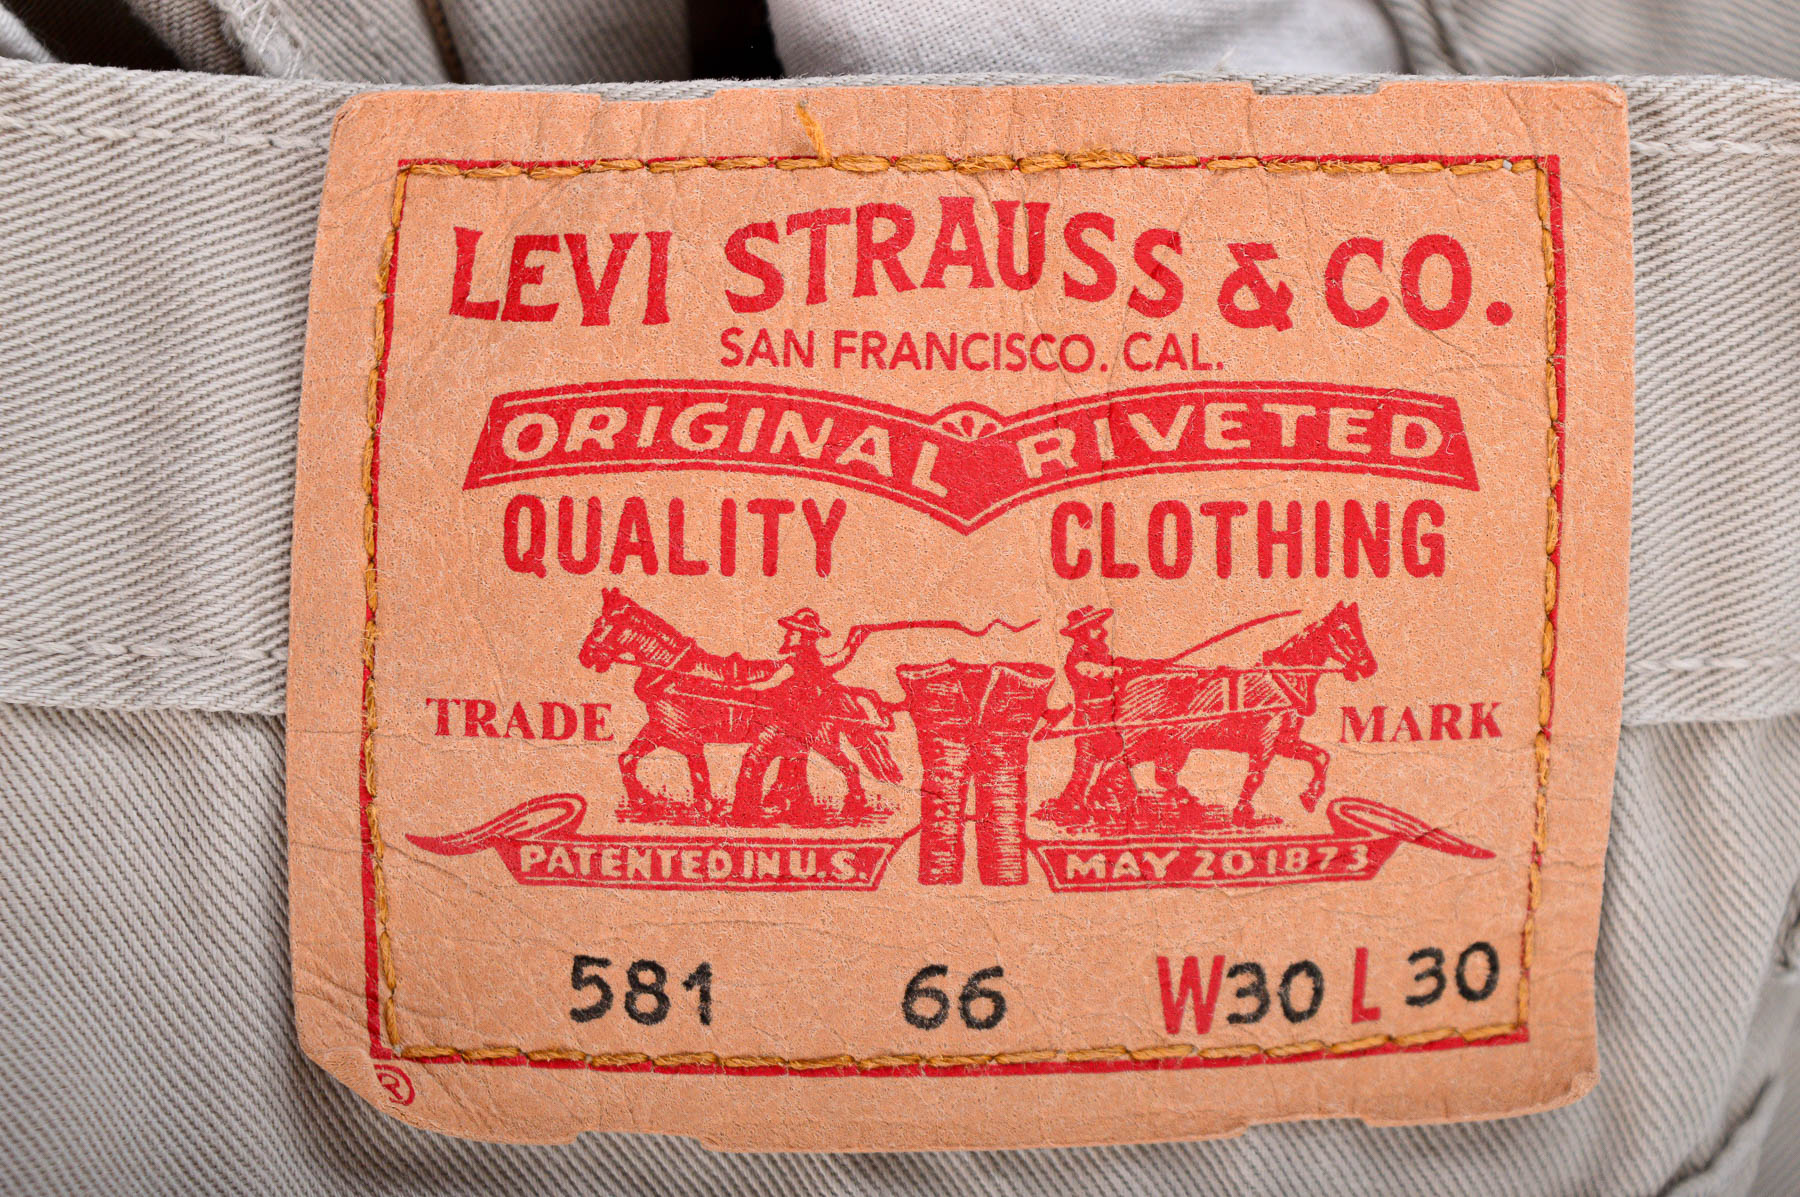 Męskie dżinsy - Levi Strauss & Co. - 2